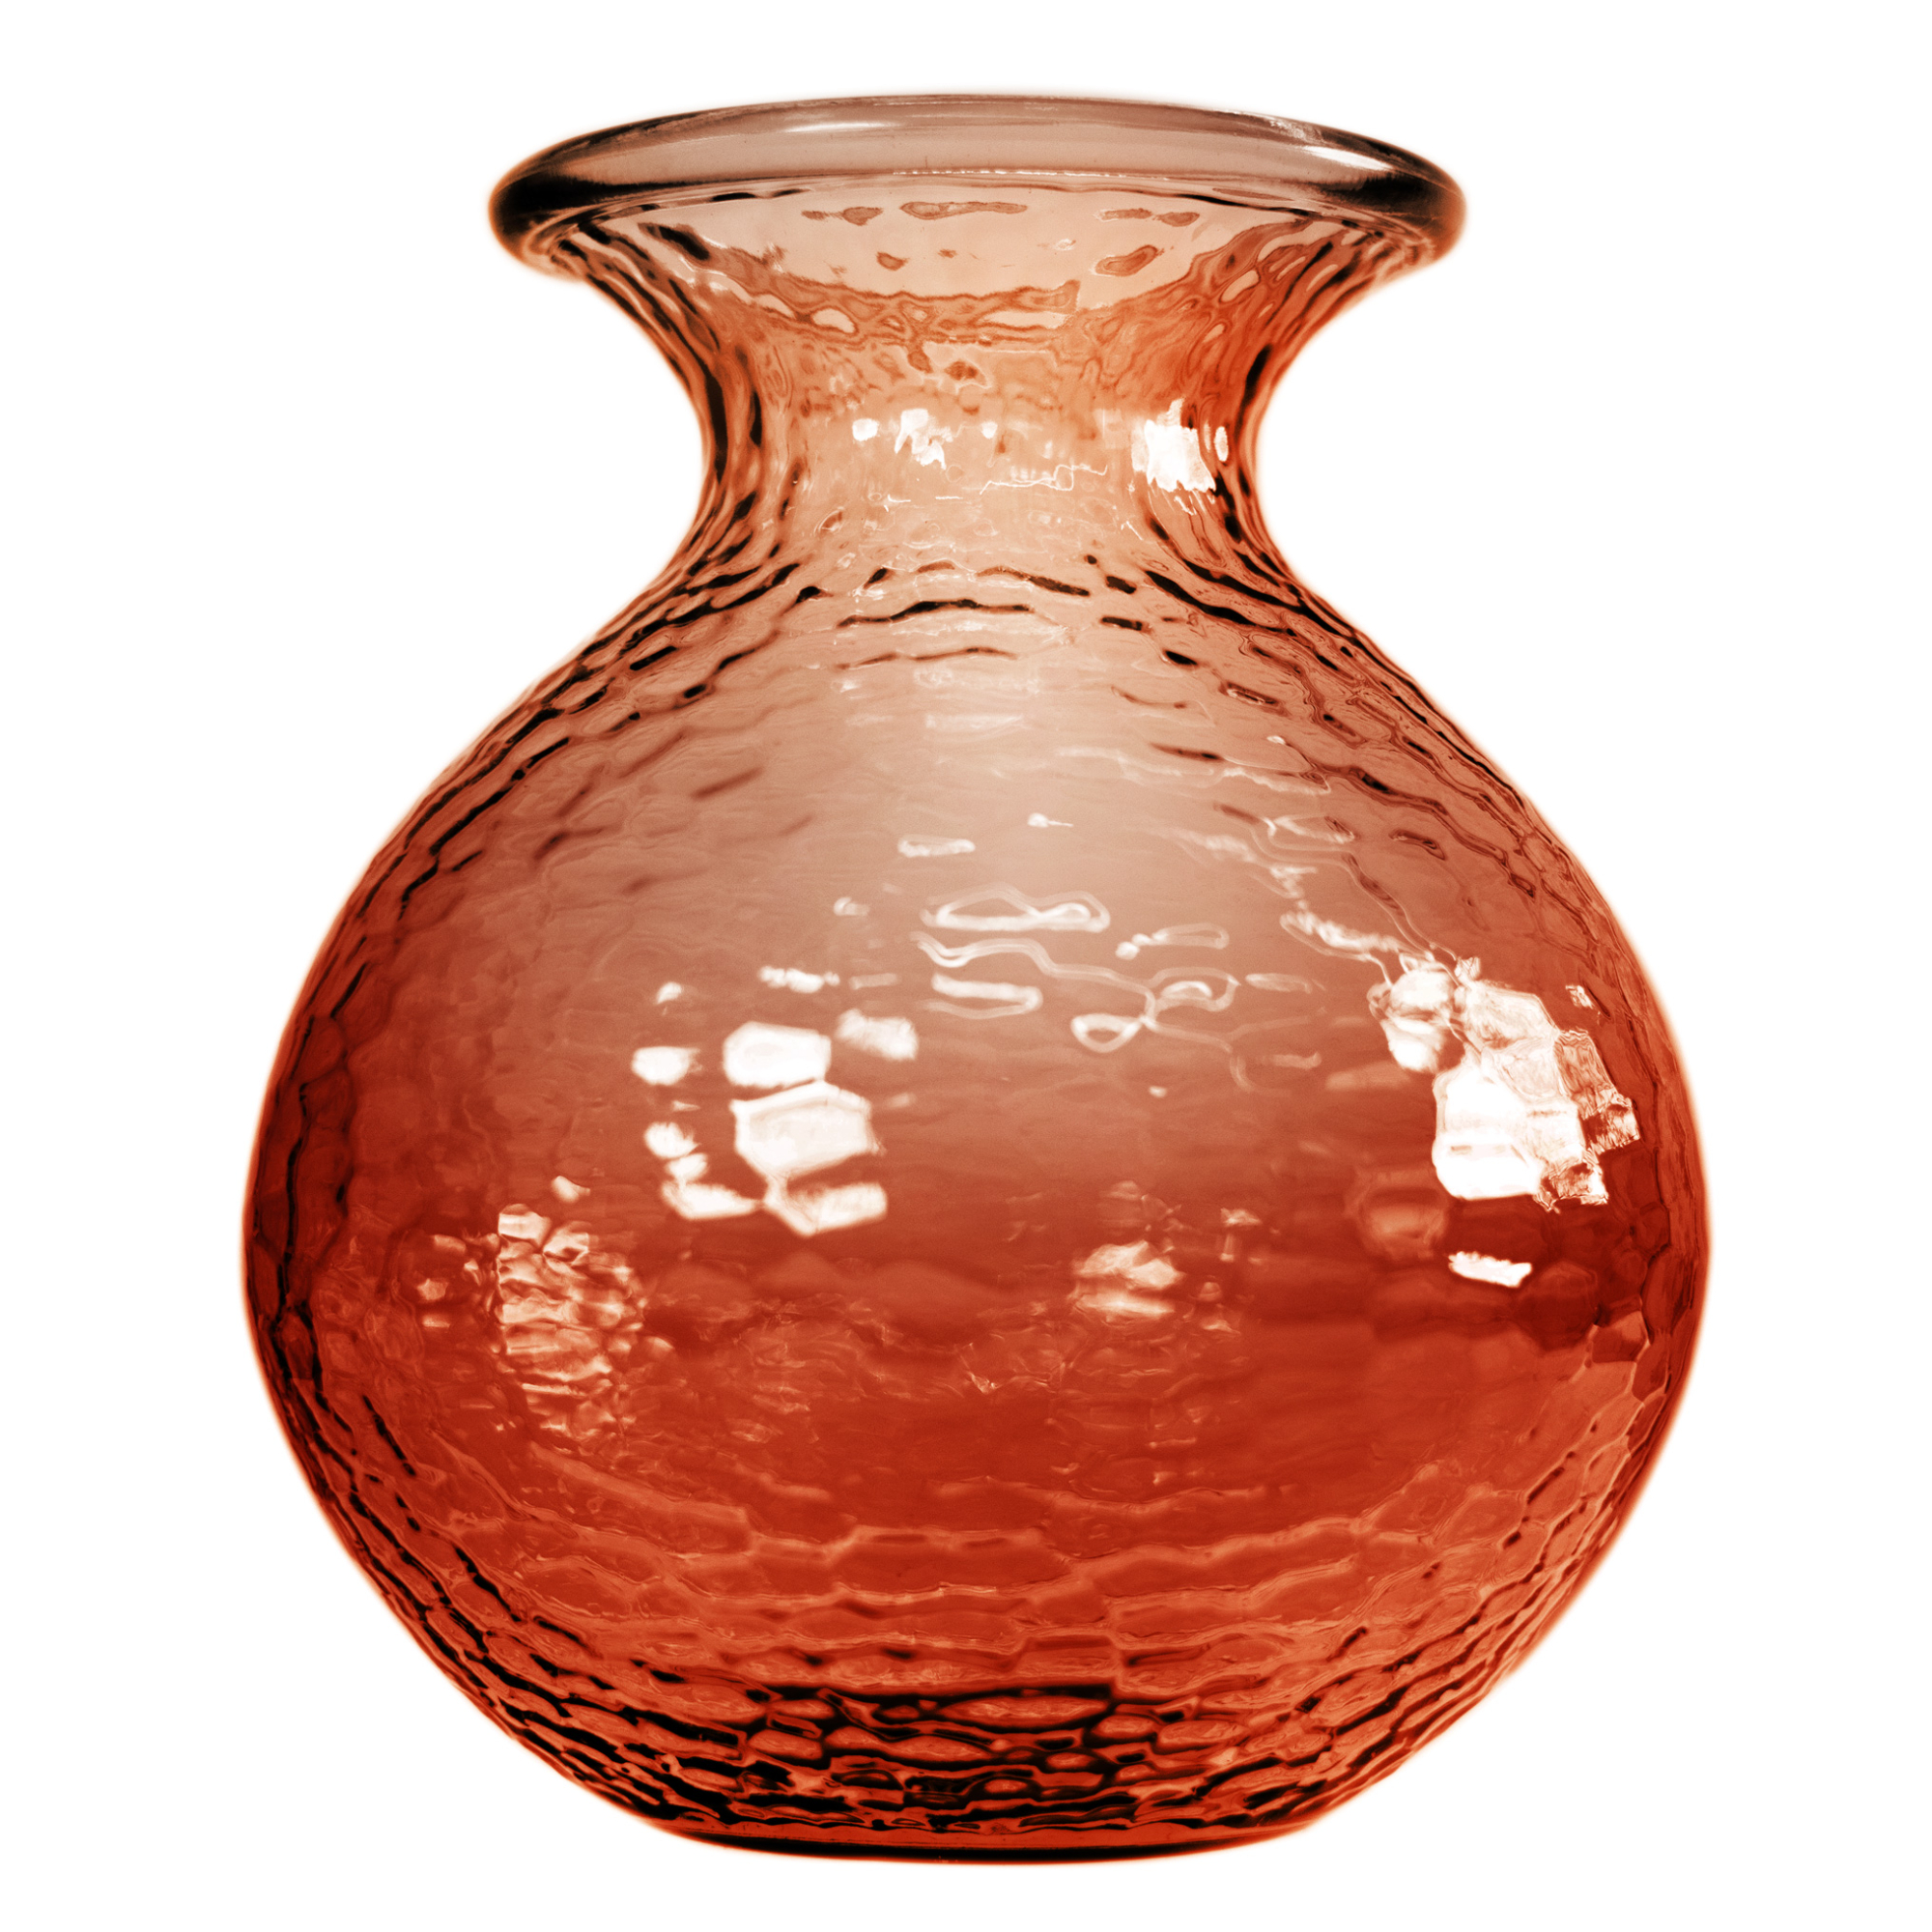 Ваза San miguel Paradise коричневый 33 см ваза san miguel enea оранжевая 33 см